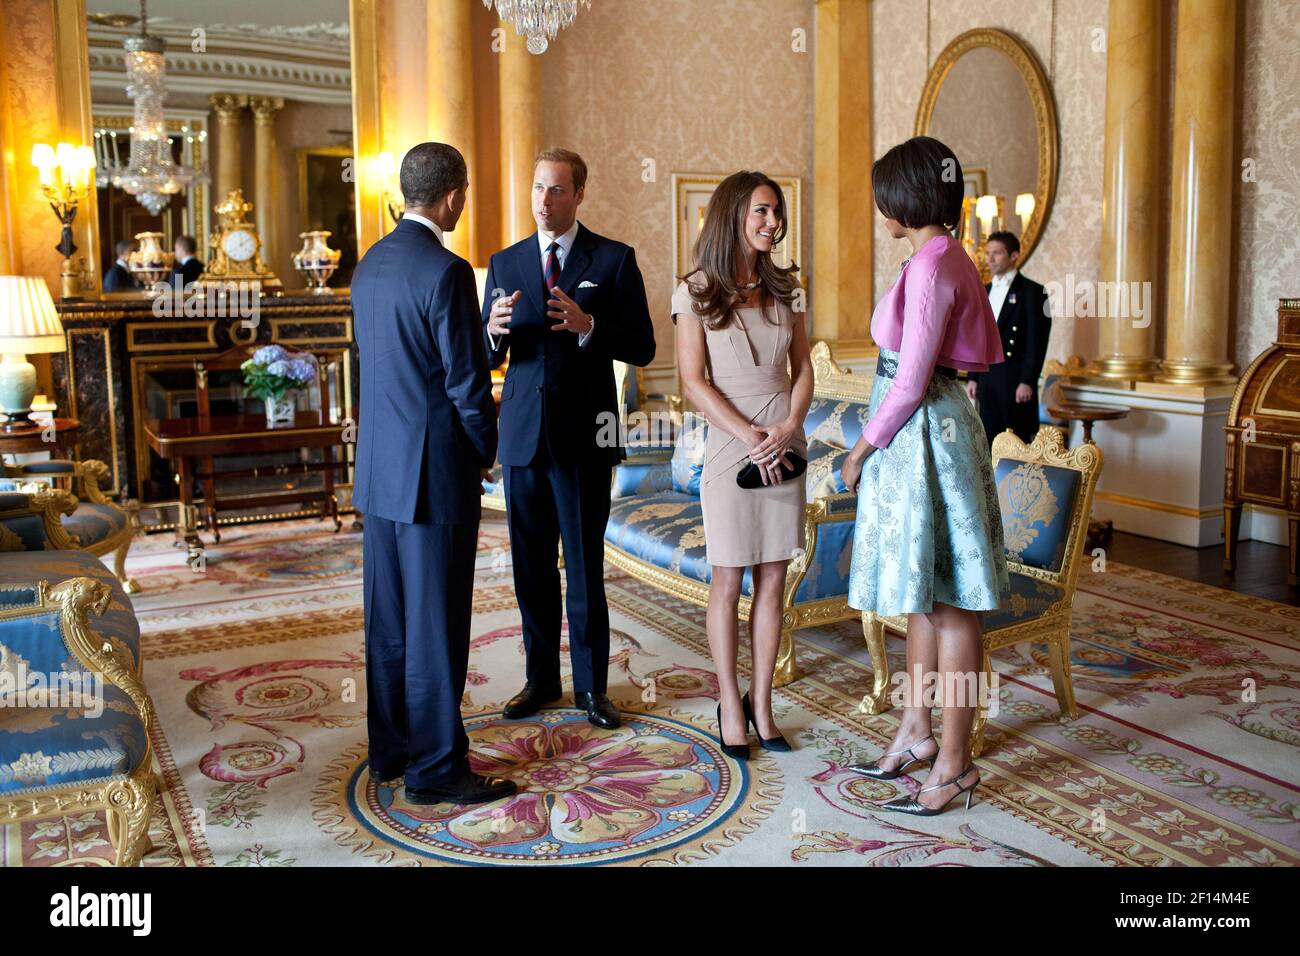 Il presidente Barack Obama e la First Lady Michelle Obama parlano con il duca e la duchessa di Cambridge nella sala 1844 di Buckingham Palace a Londra, Inghilterra, 24 maggio 2011 Foto Stock